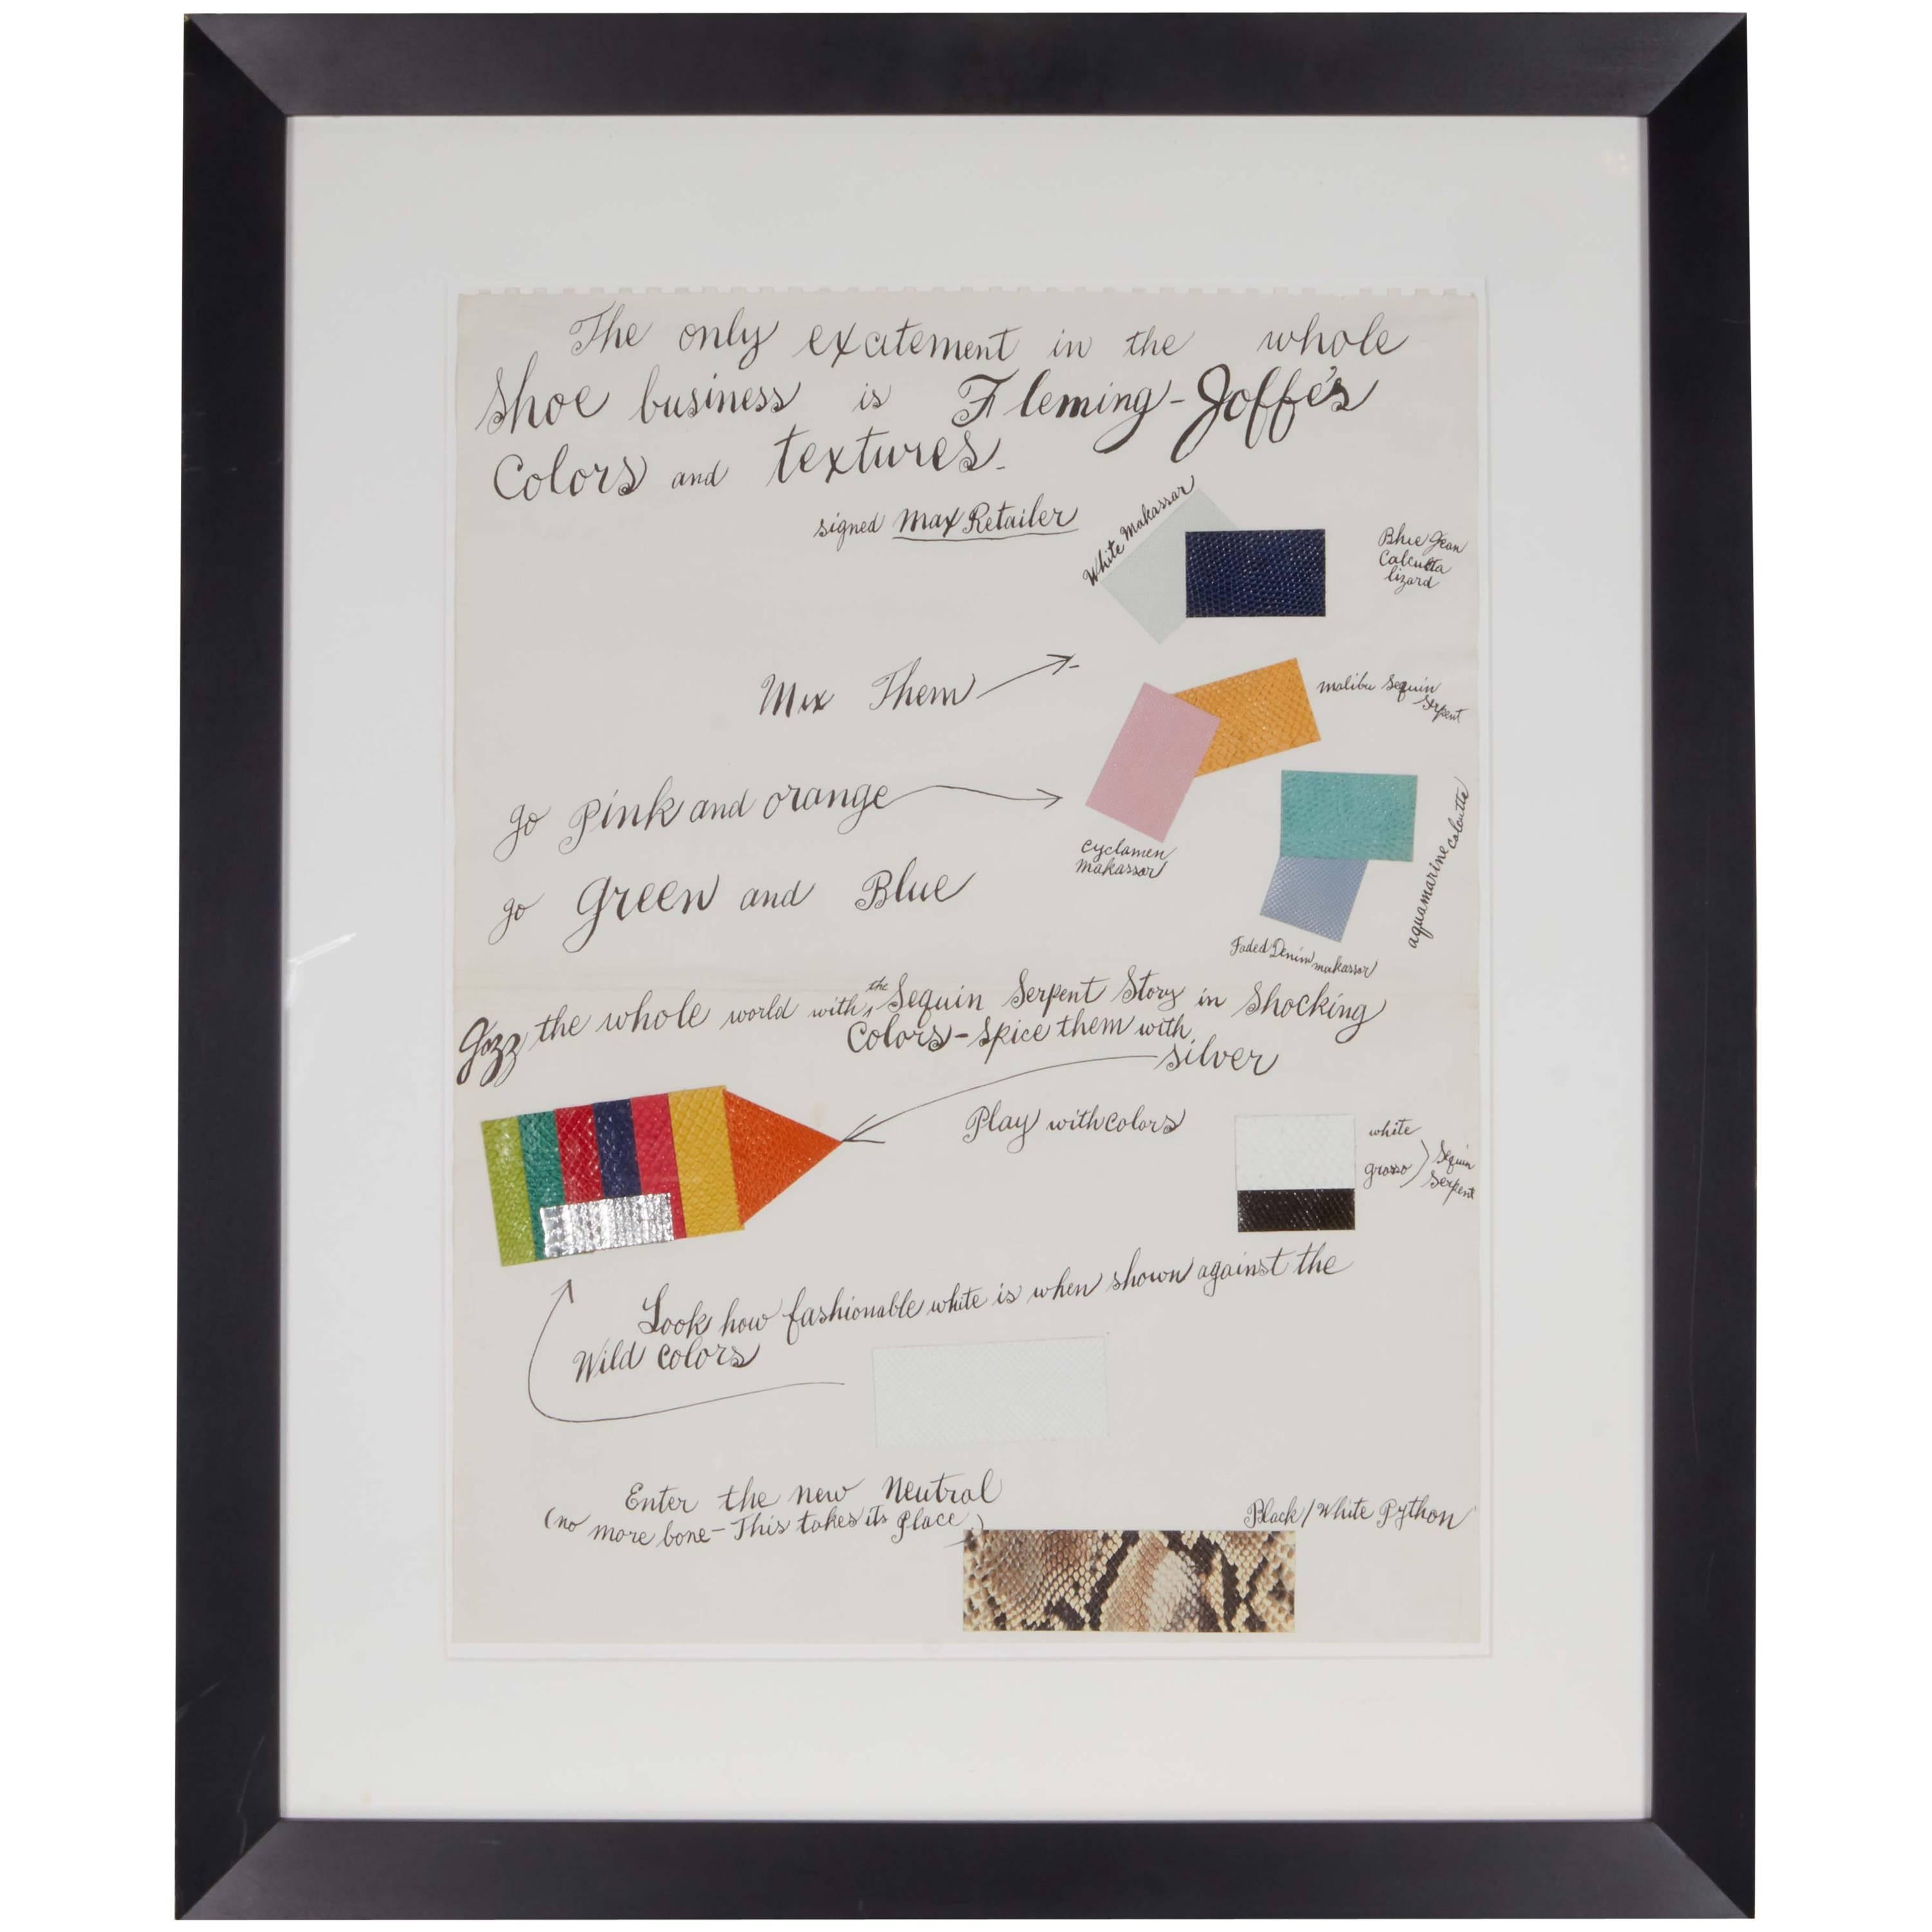 Andy Warhol, lithographie offset avec collage d'échantillons de cuir colorés, 1960